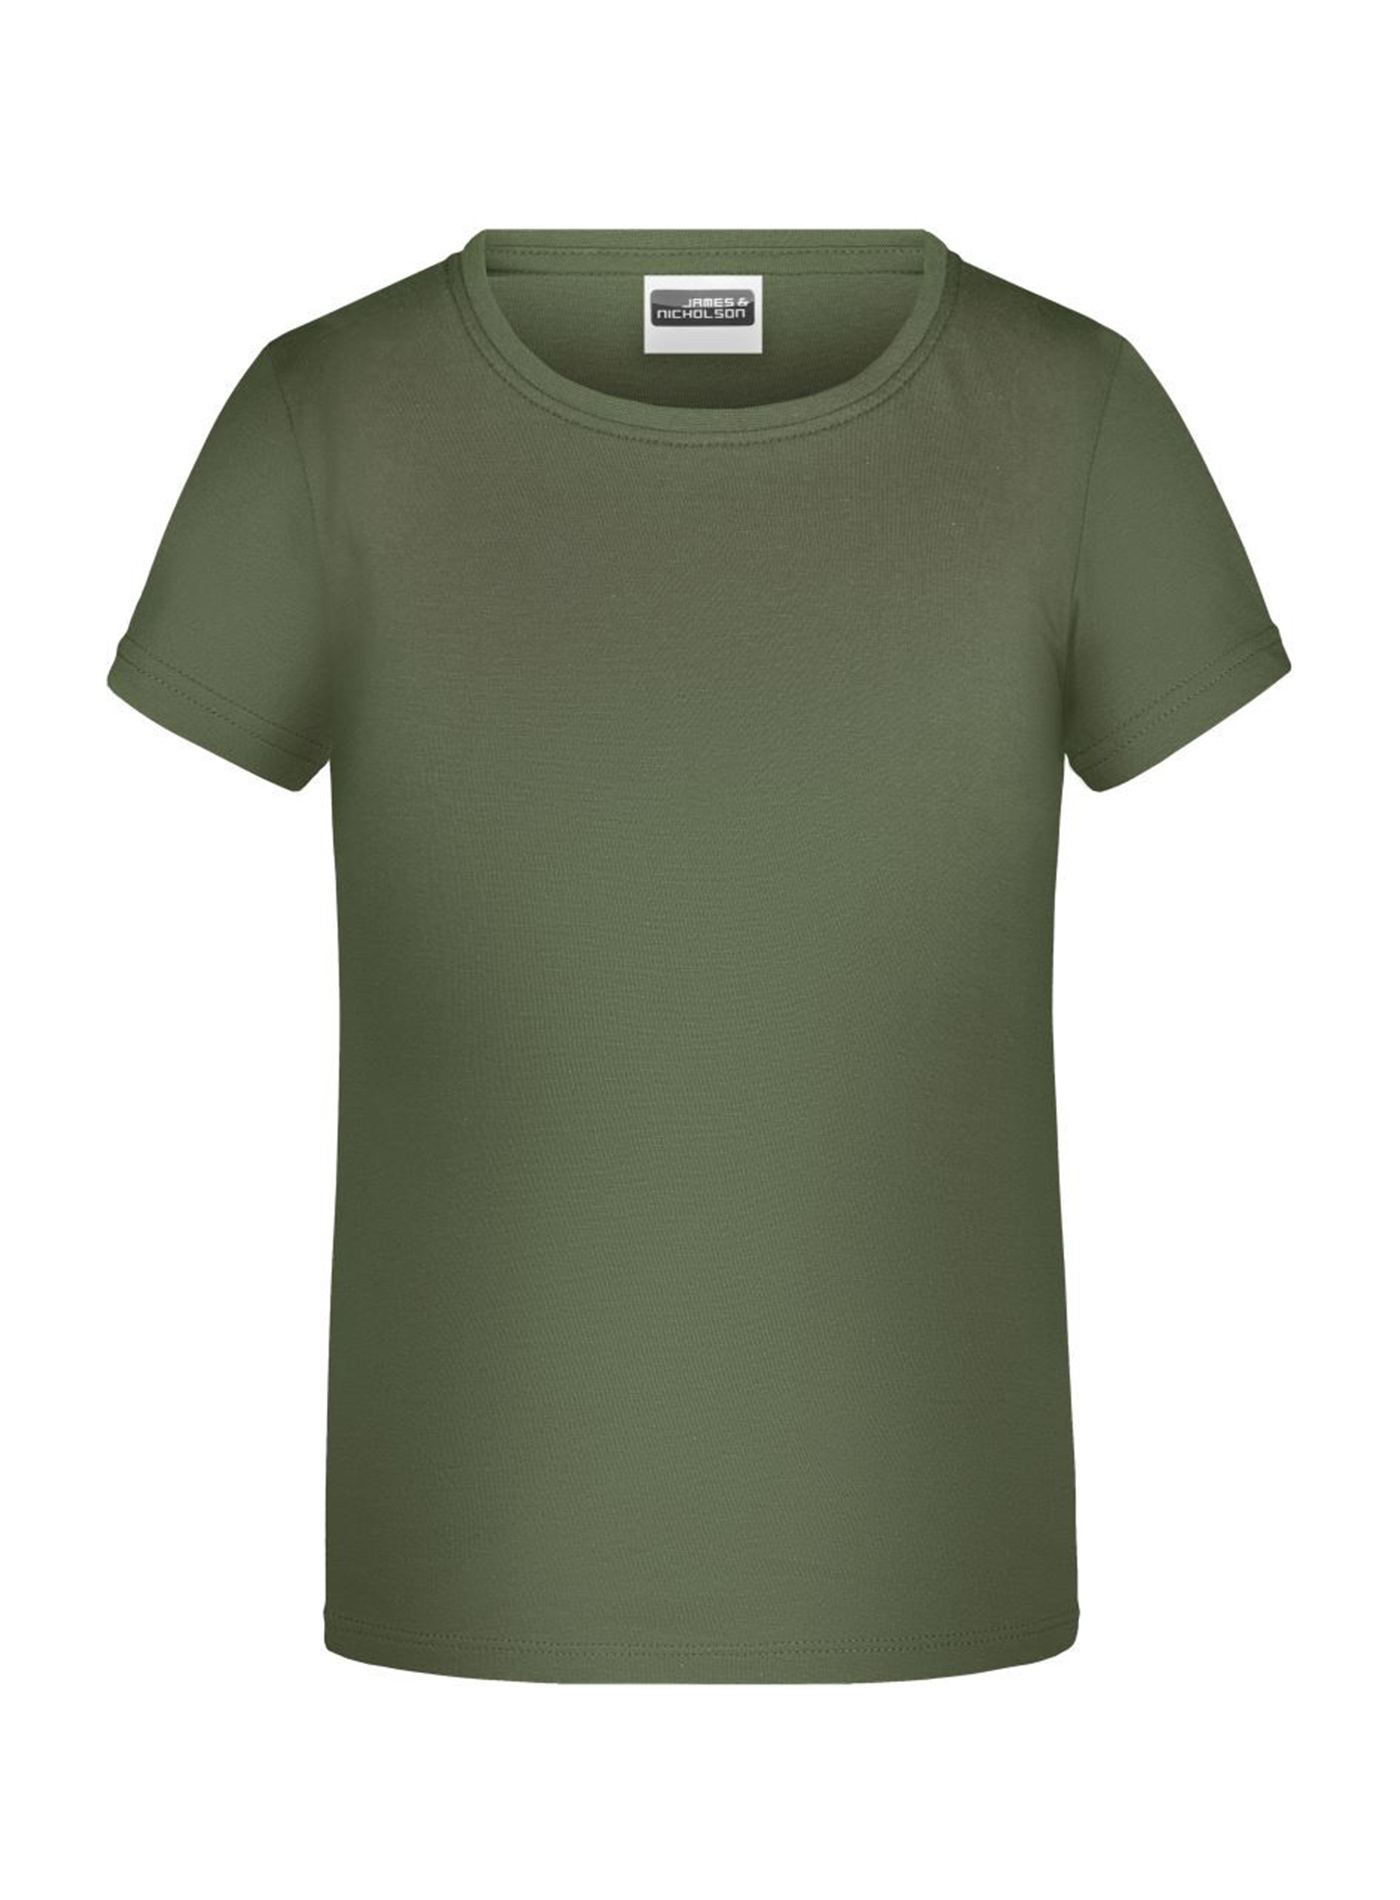 Dívčí tričko James & Nicholson - Olivová XL